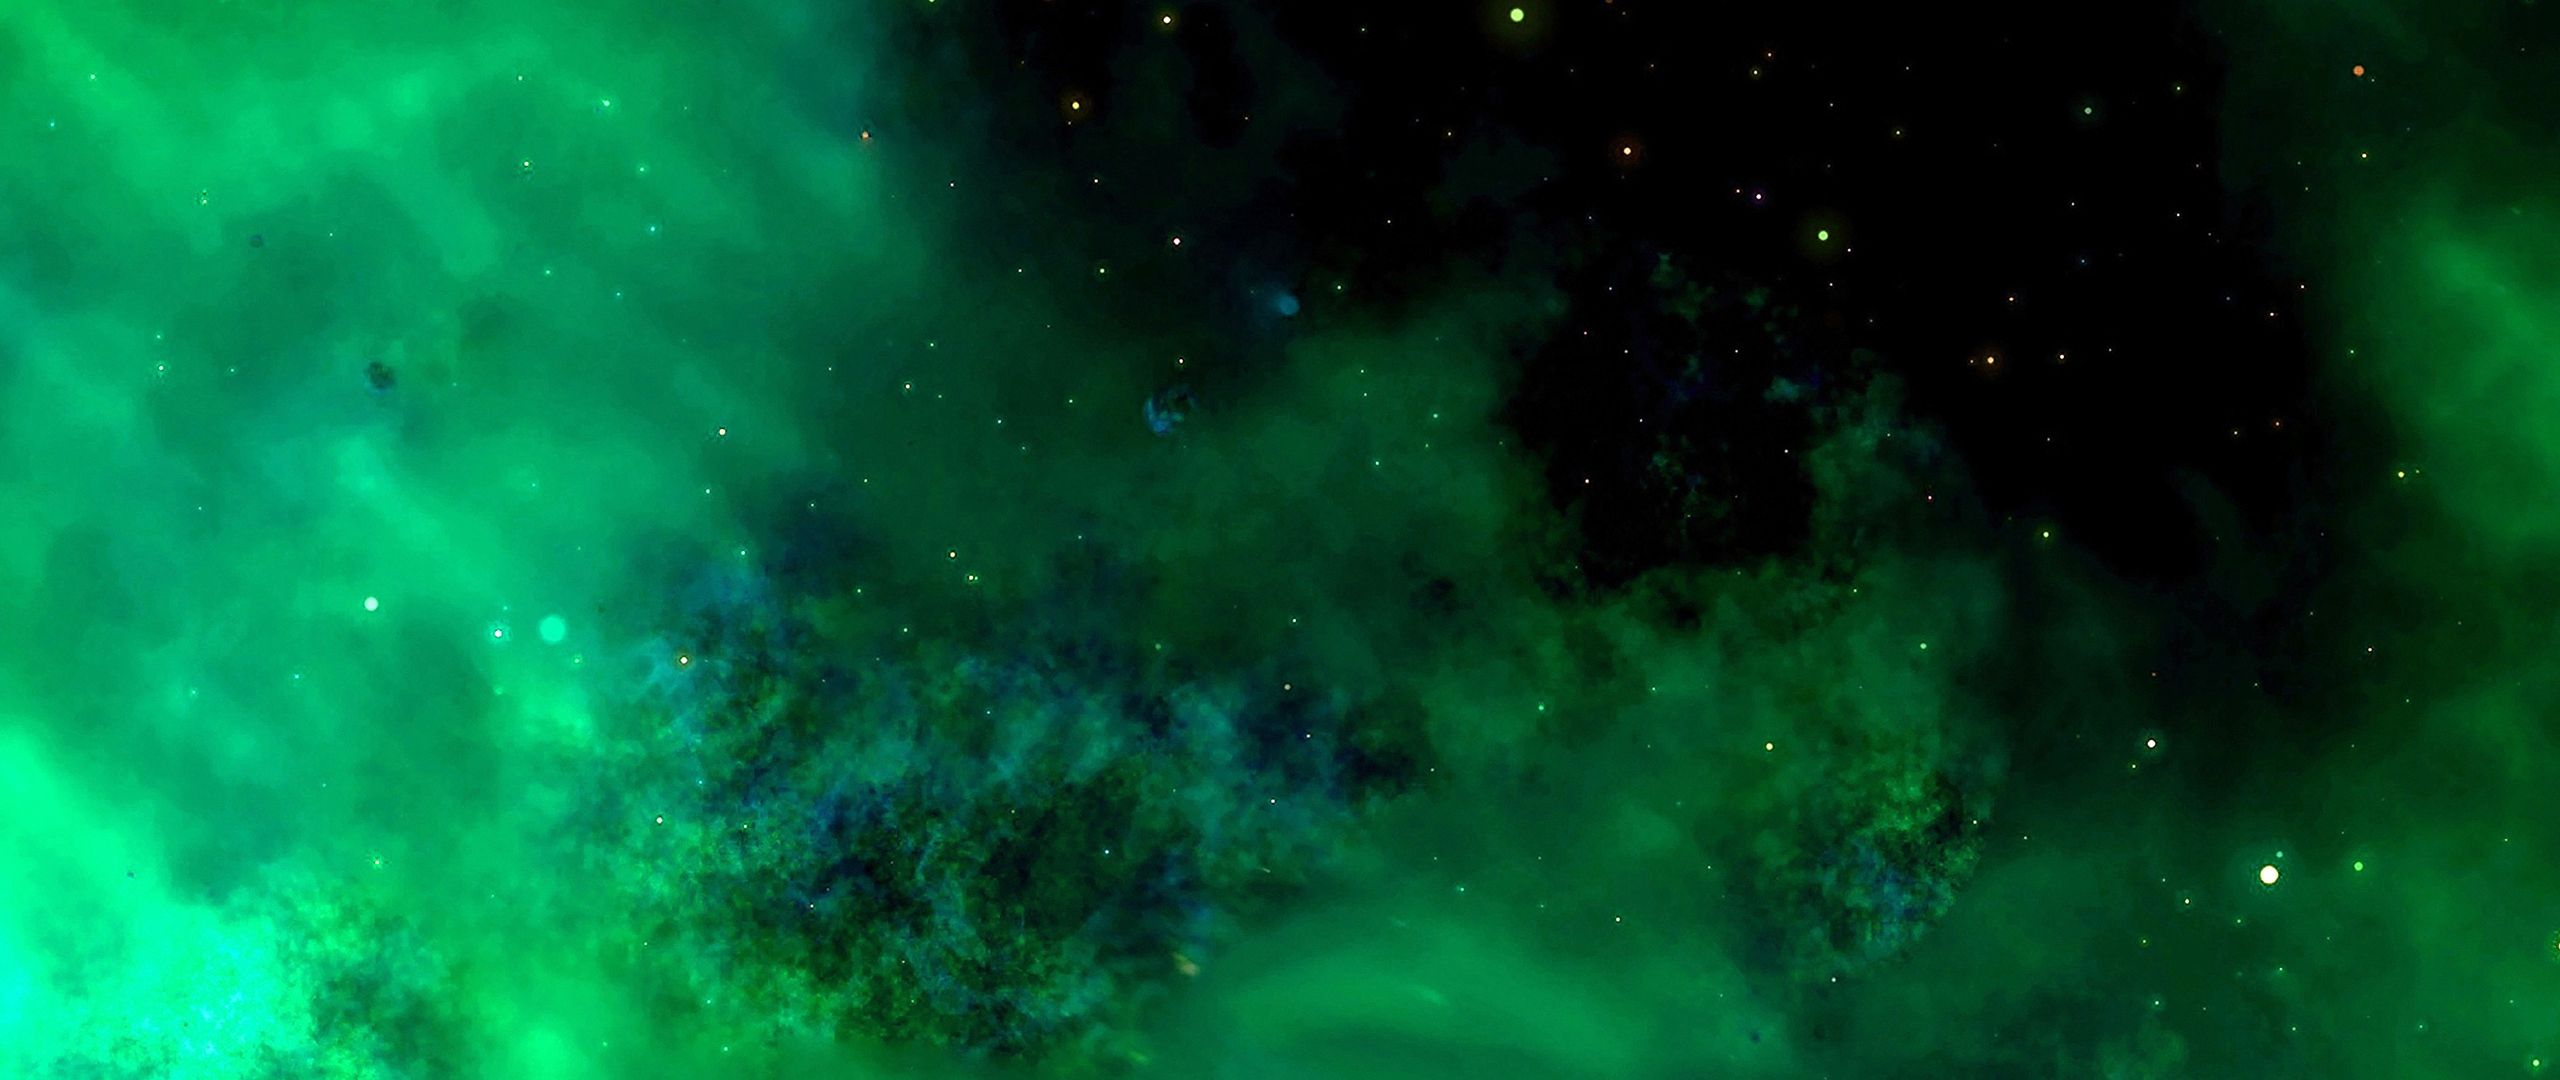 Bạn muốn khám phá không gian xa xôi đầy bí ẩn? Với nền màu xanh Galaxy trong bức ảnh này, bạn sẽ thấy mình như đang lạc vào một thế giới mới toanh. Hãy cùng lắng nghe những câu chuyện khác nhau mà bức ảnh này muốn kể cho bạn.